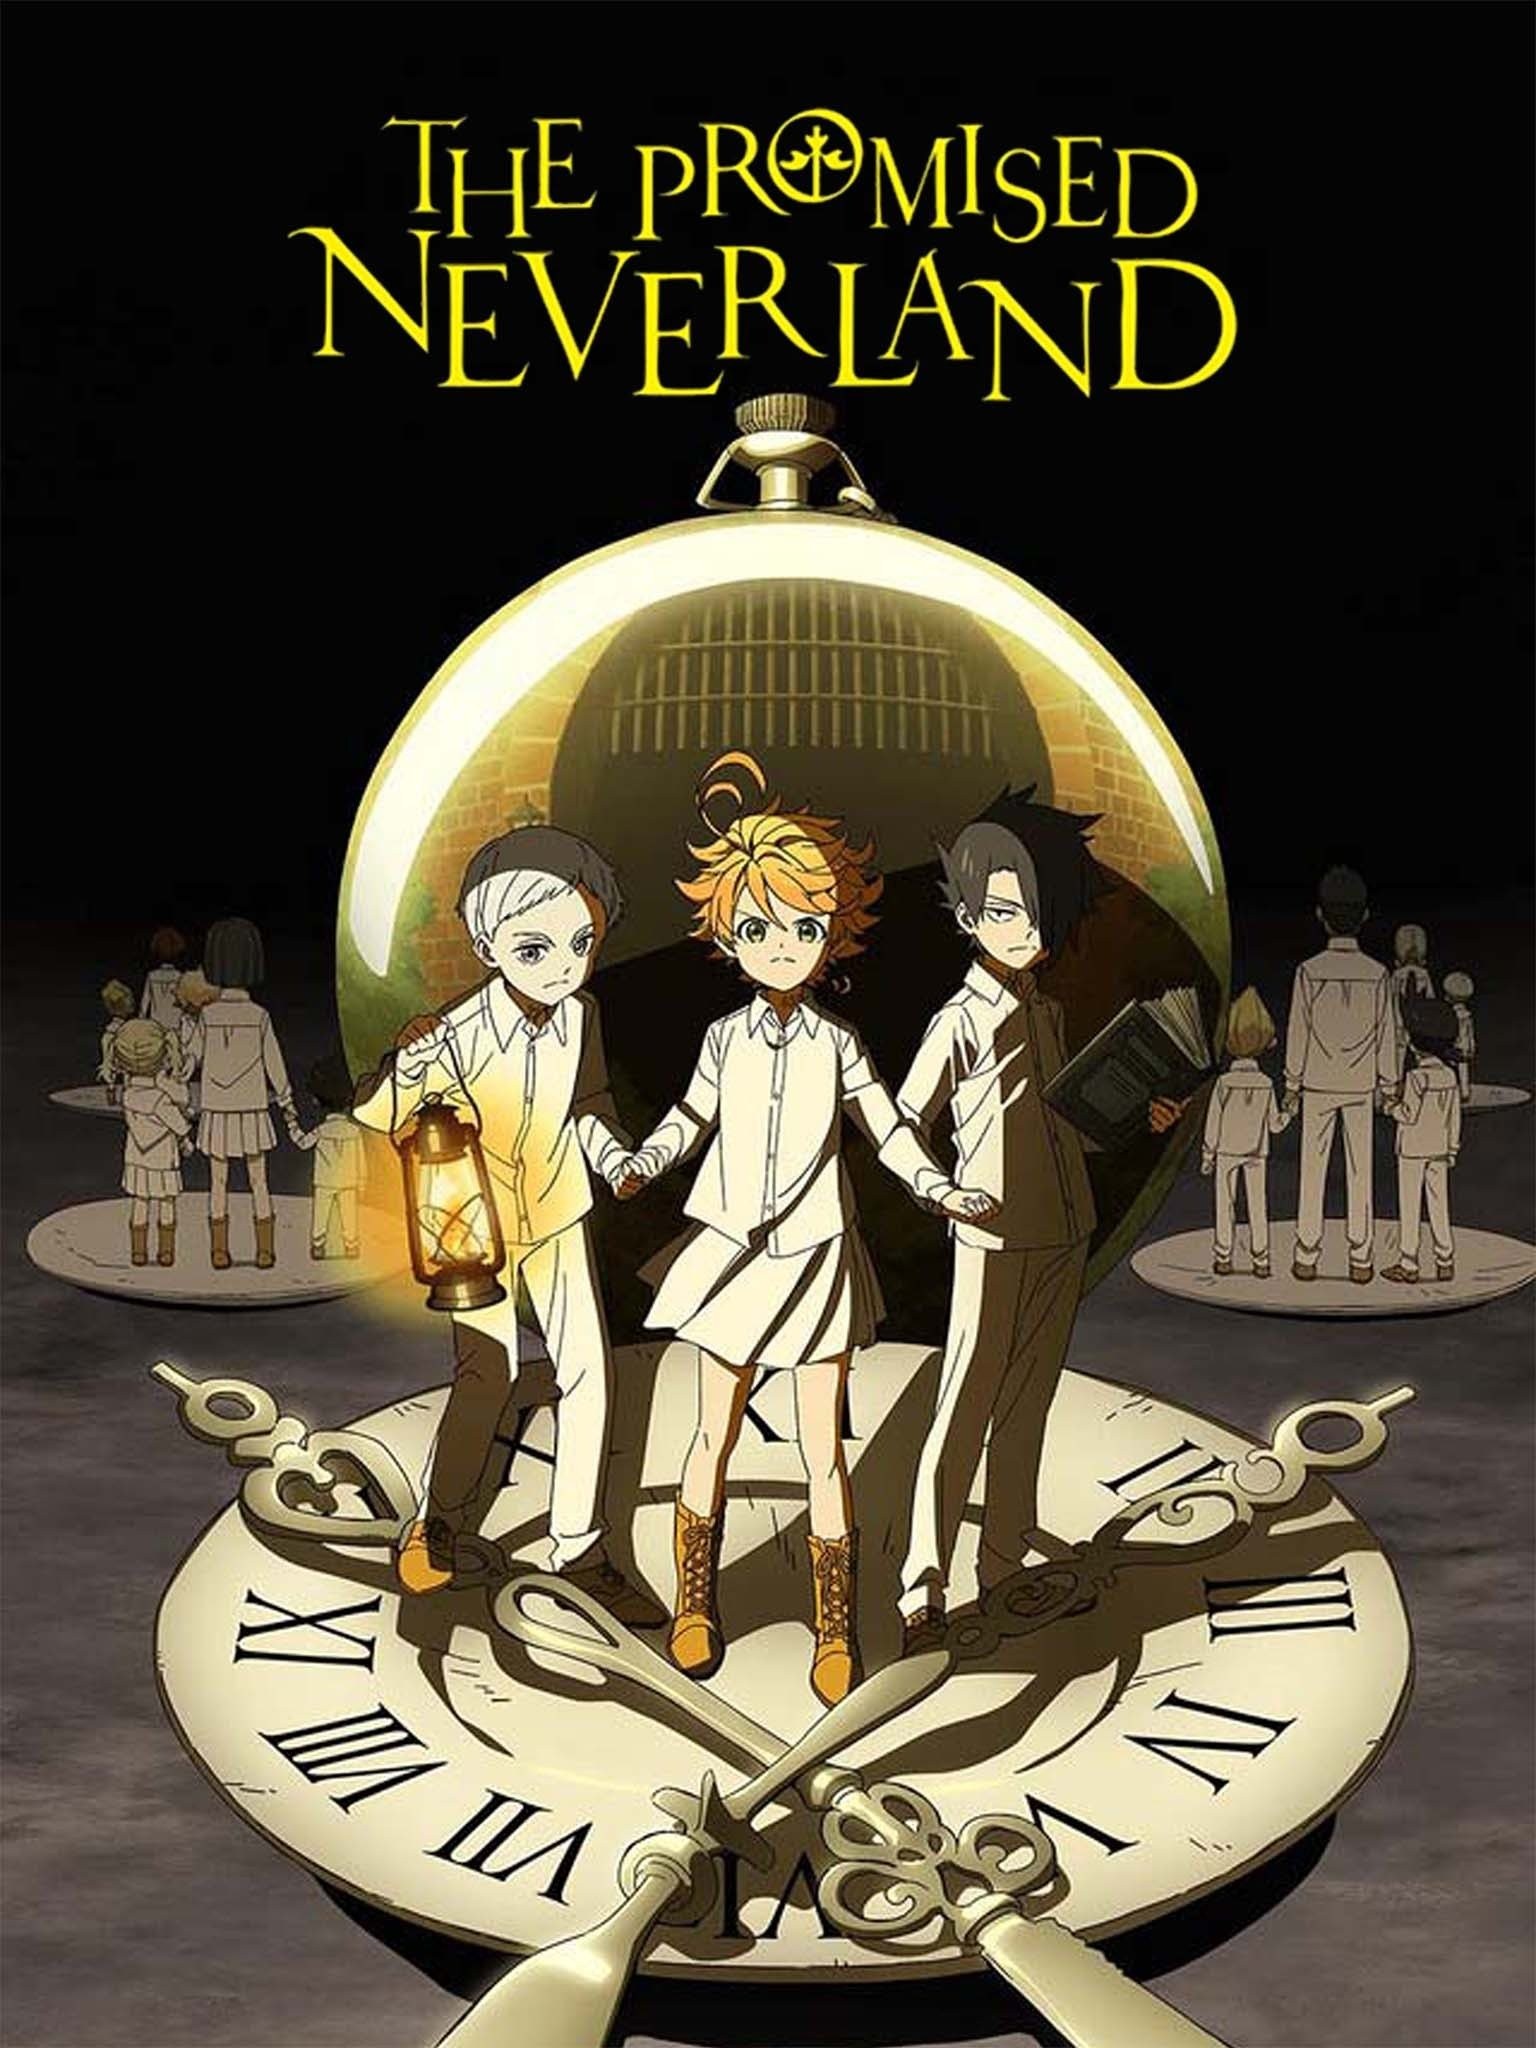 The Promised Neverland Anime Season 2 Unveils New Visual - News